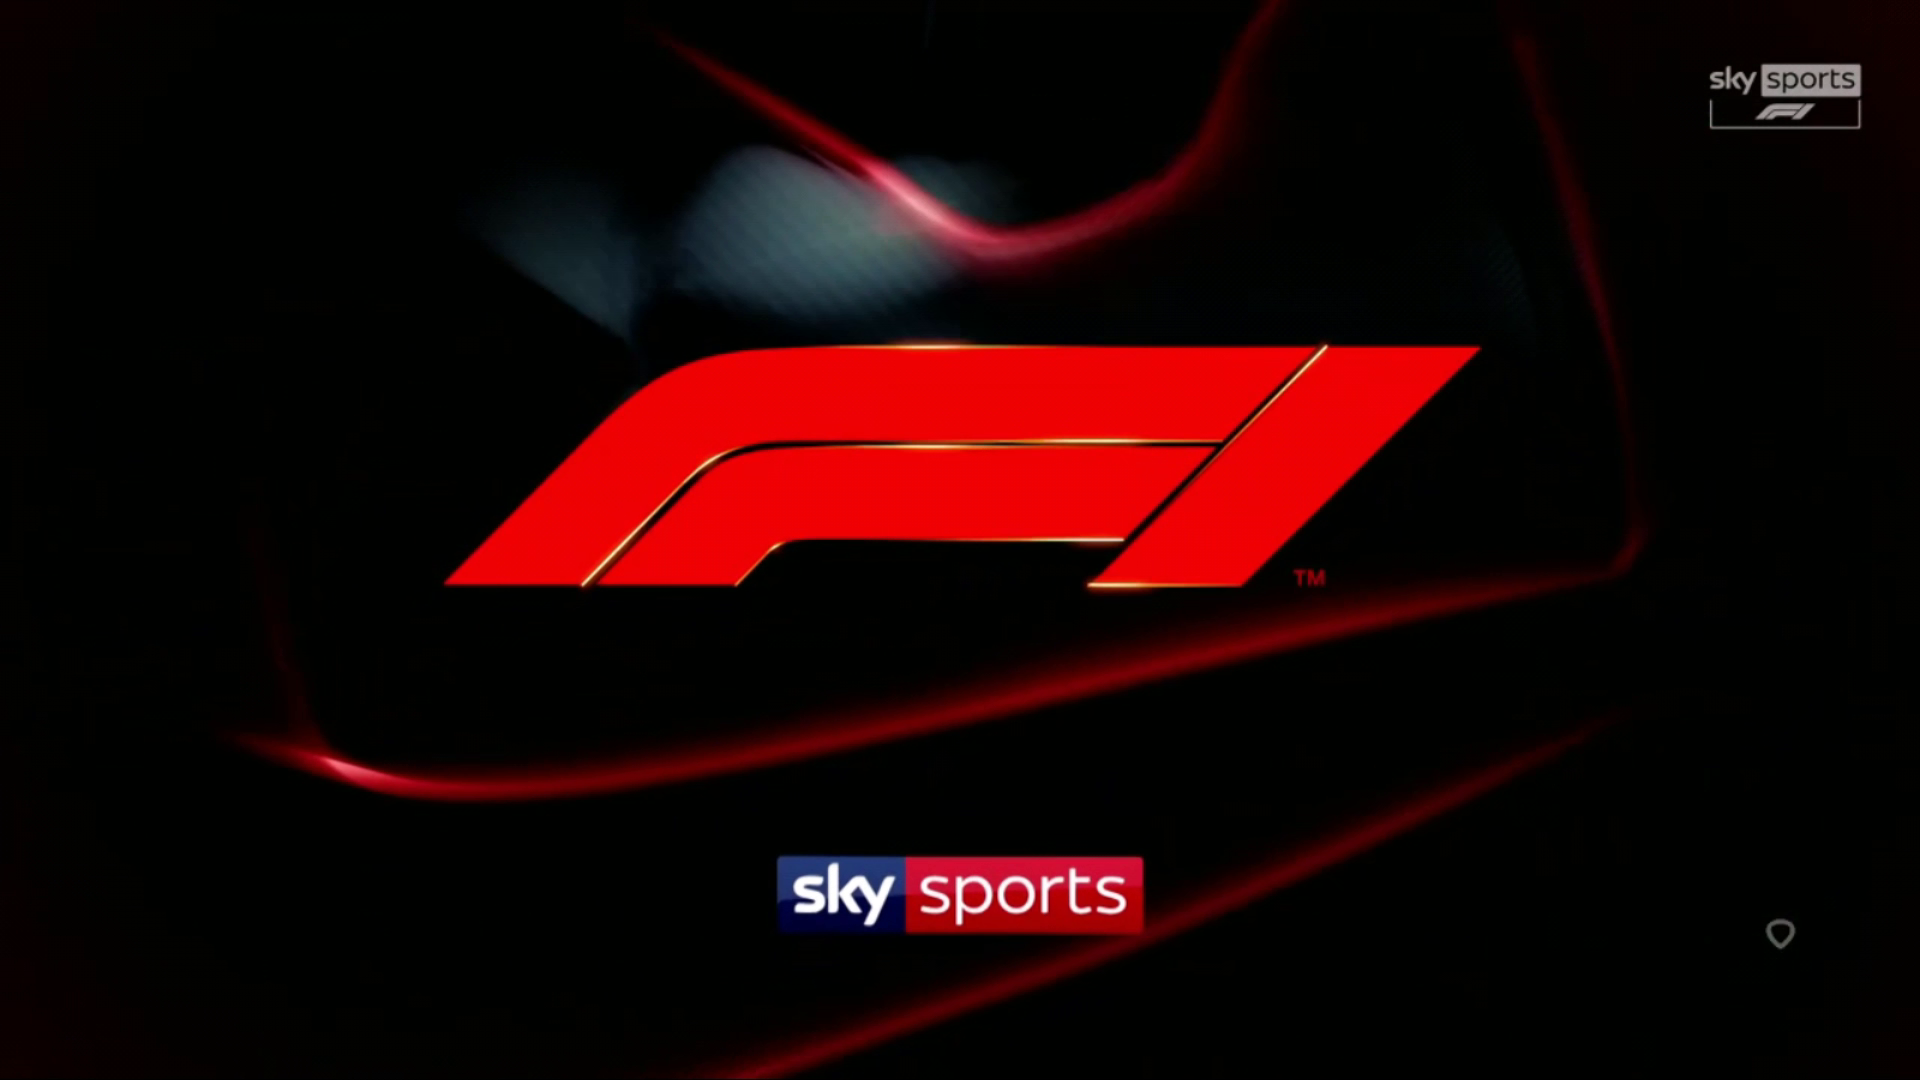 Sky Sports Formule 1 - 2021 Race 14 - Italie - Race - 1080p